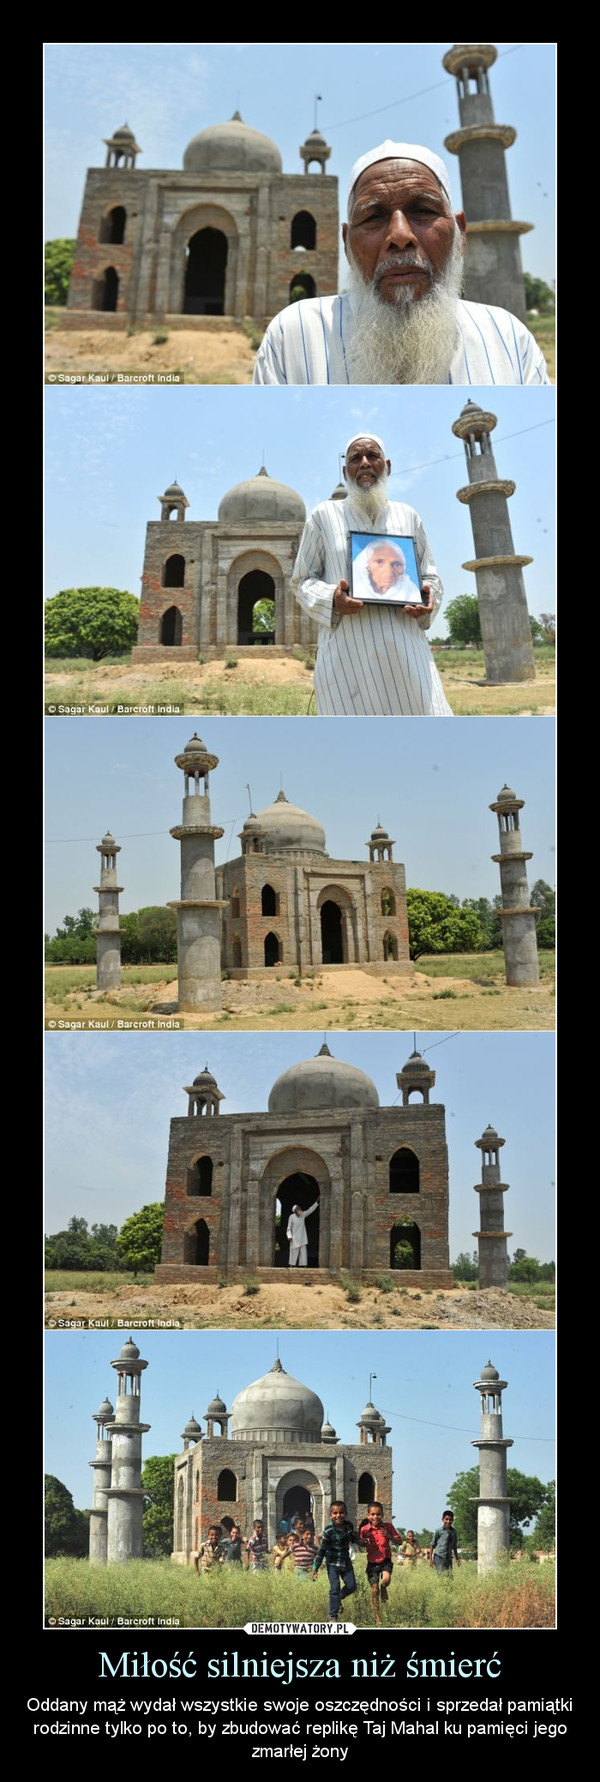 Miłość silniejsza niż śmierć – Oddany mąż wydał wszystkie swoje oszczędności i sprzedał pamiątki rodzinne tylko po to, by zbudować replikę Taj Mahal ku pamięci jego zmarłej żony 